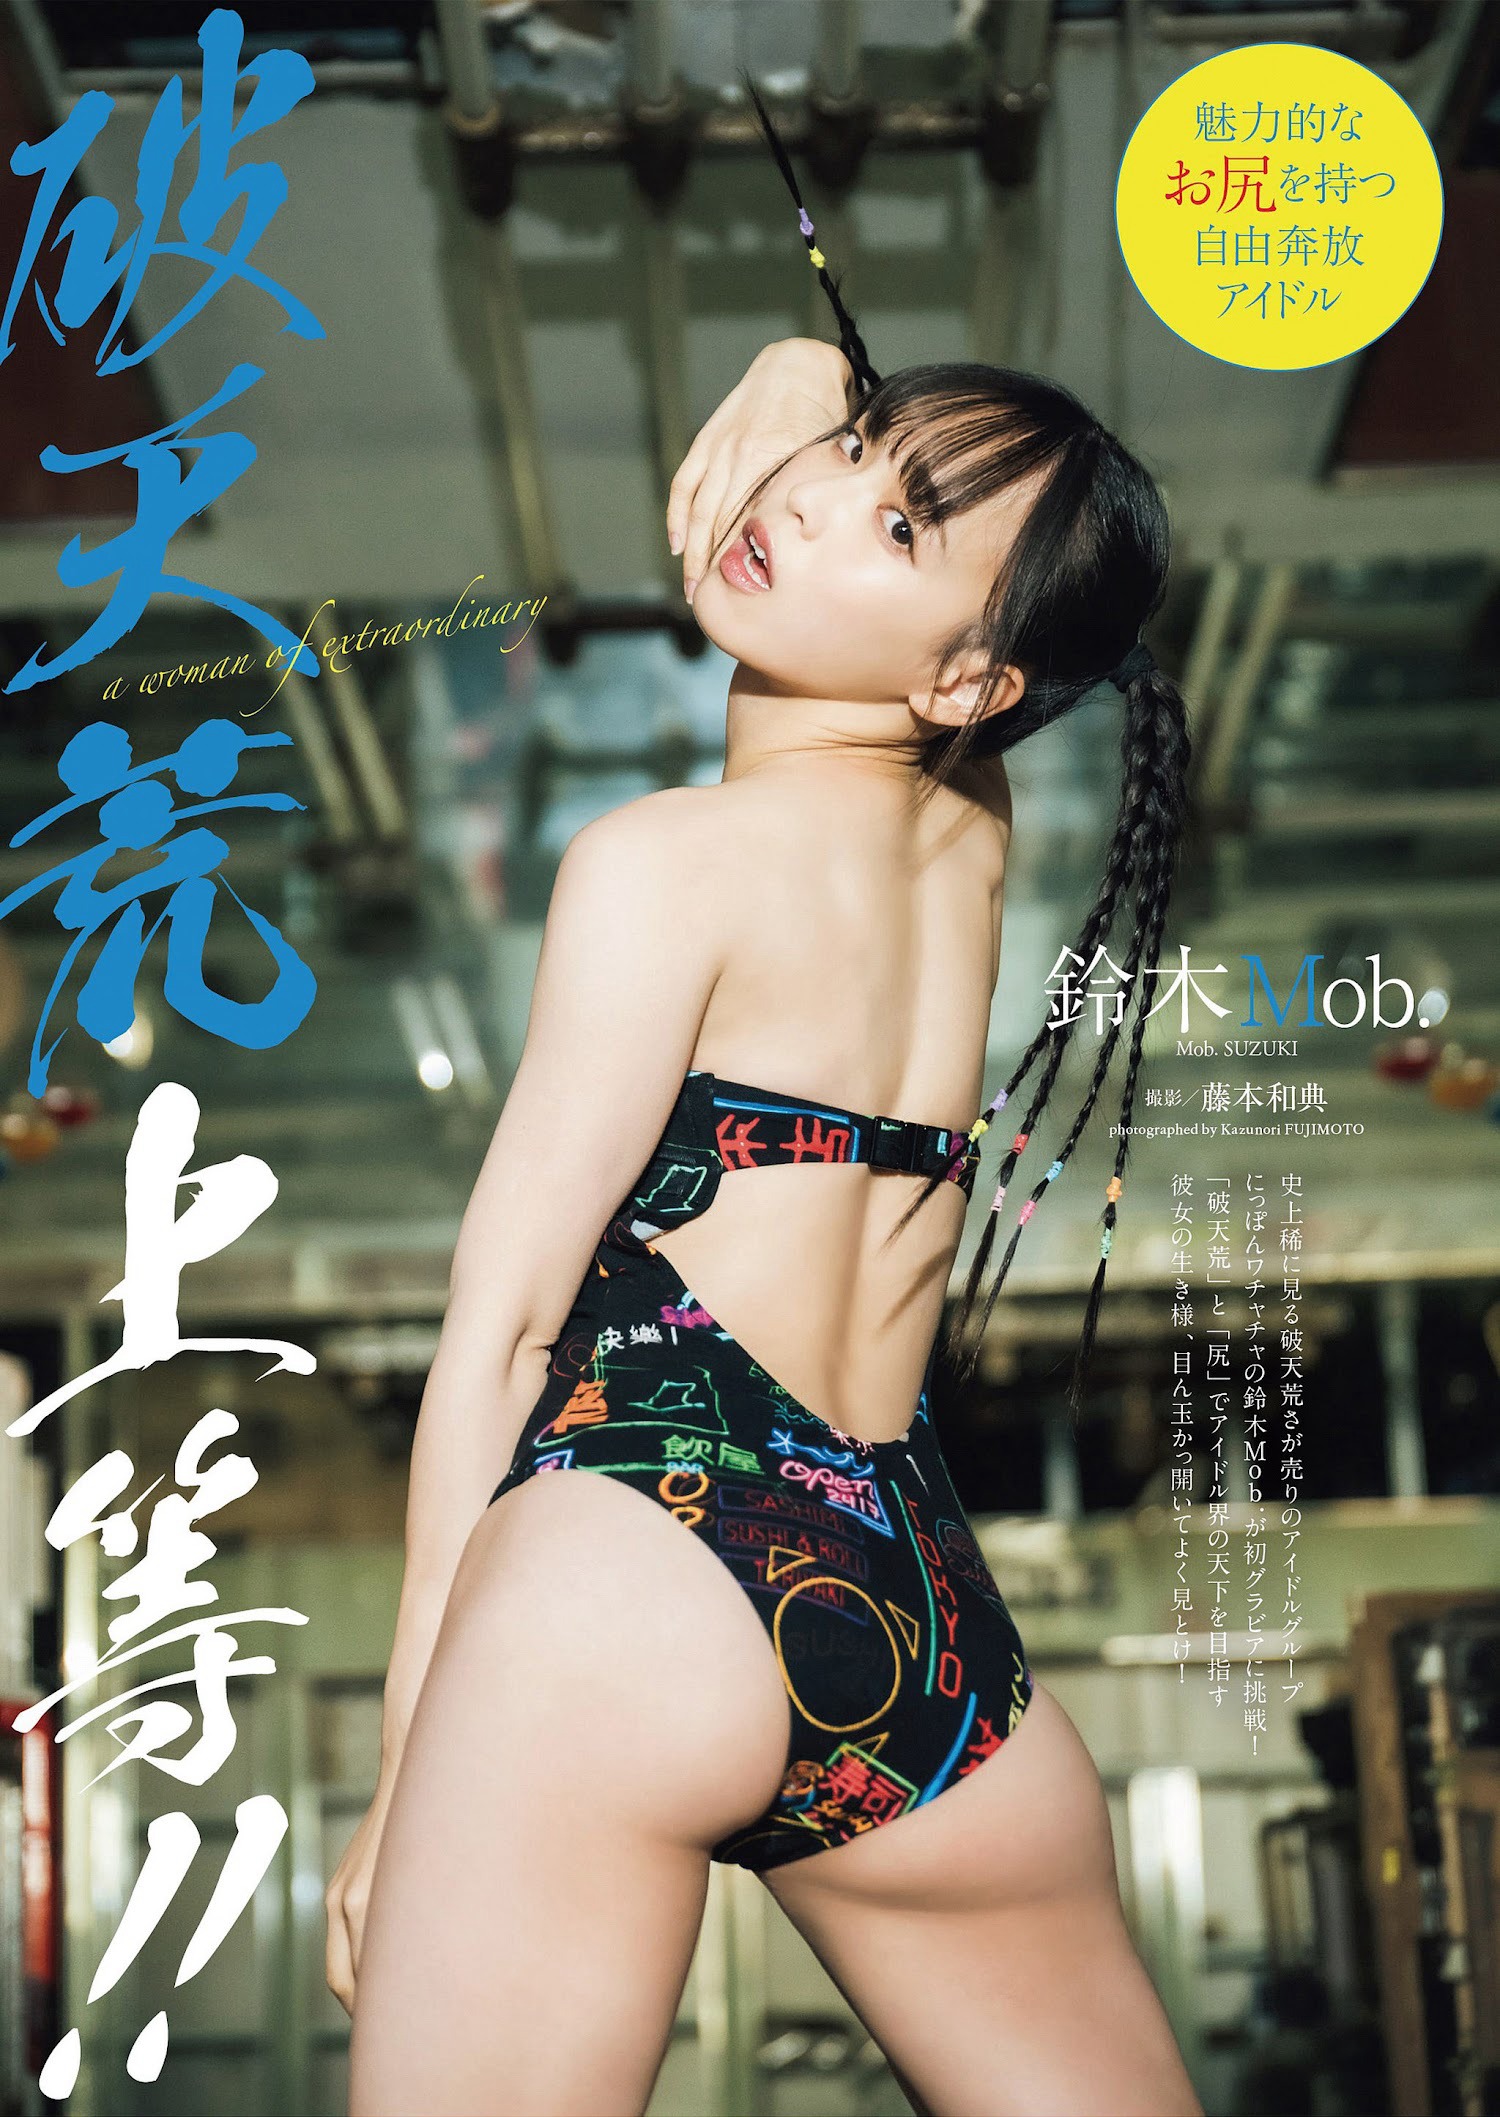 鈴木Mob [Weekly Playboy] 2023.02.27 No.08-09 - 亞洲美女 -